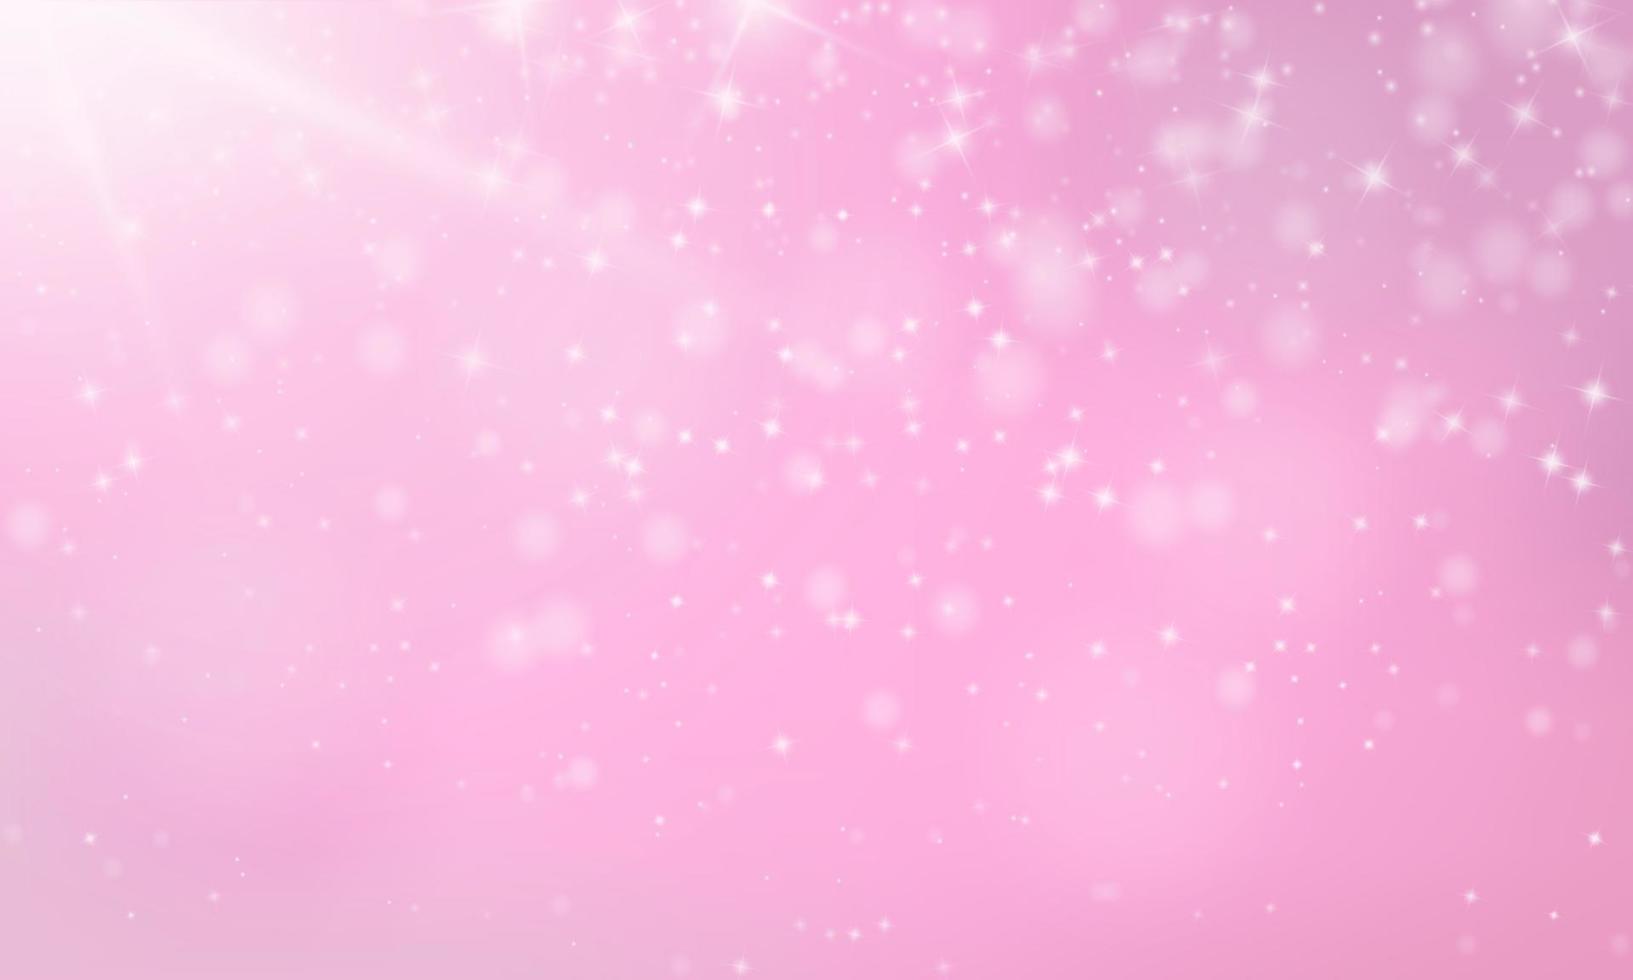 fundo rosa bokeh com estrelas brilhantes e luzes caindo vetor